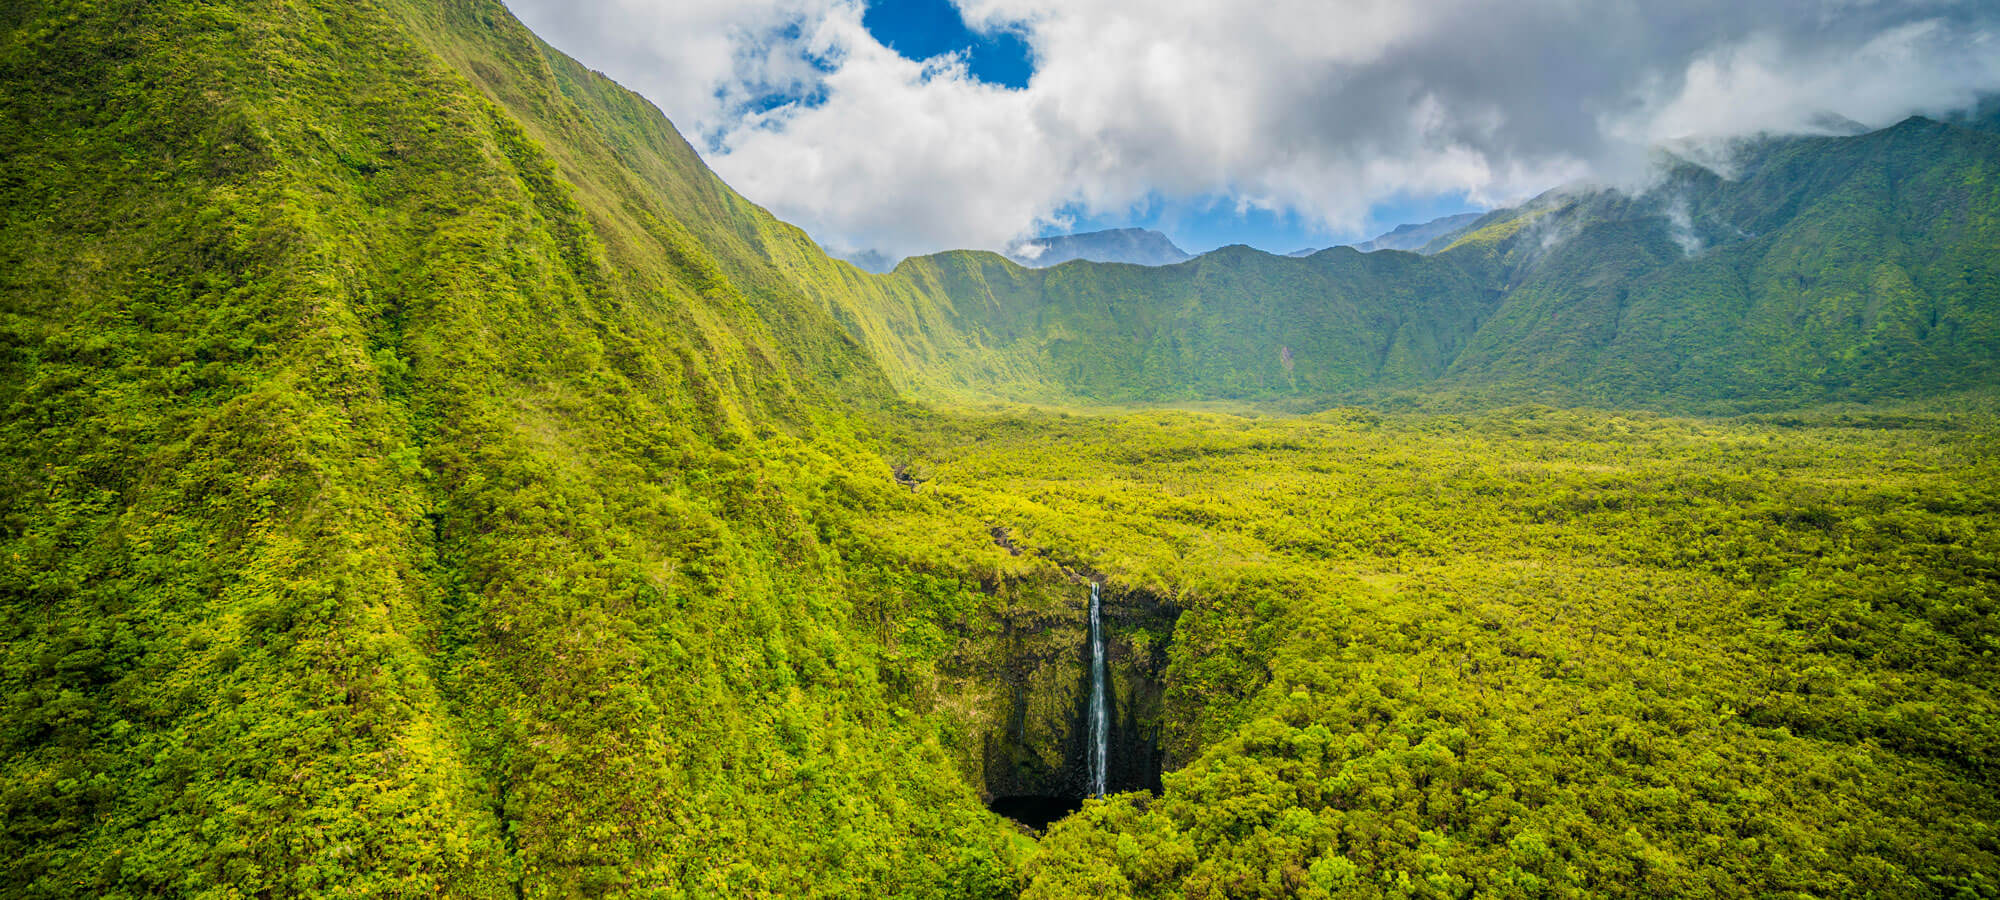 East Maui Watershed